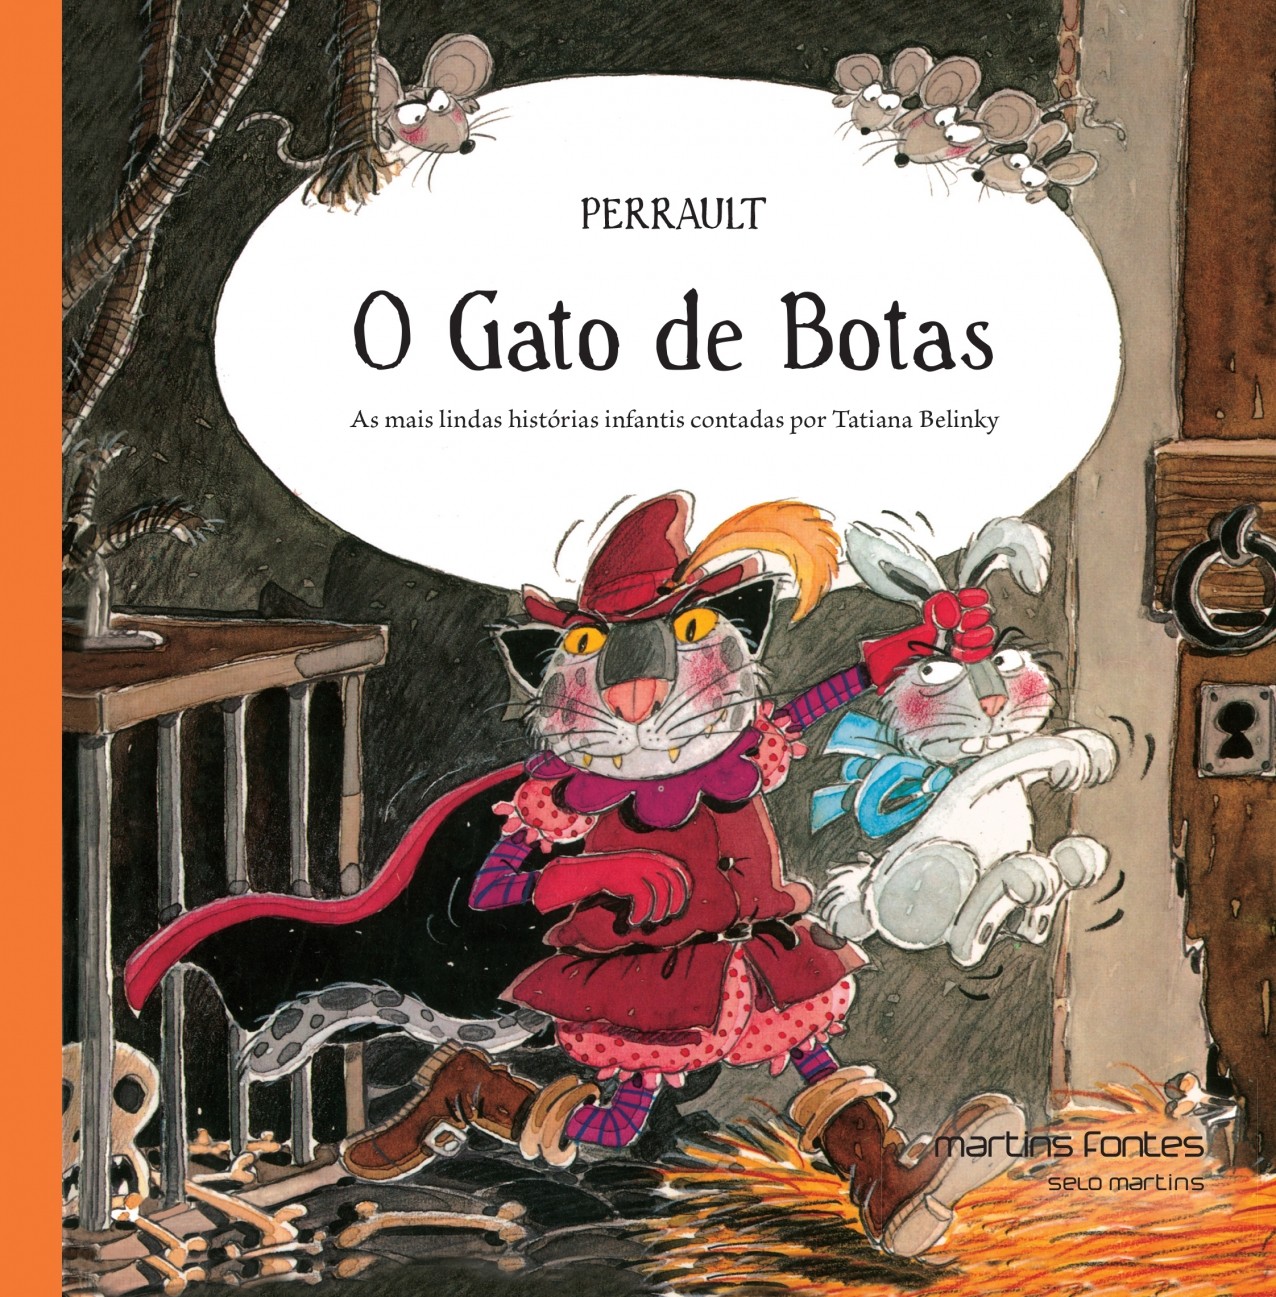 Gato de botas, O – As mais lindas histórias infantis contadas por Tatiana Belinky